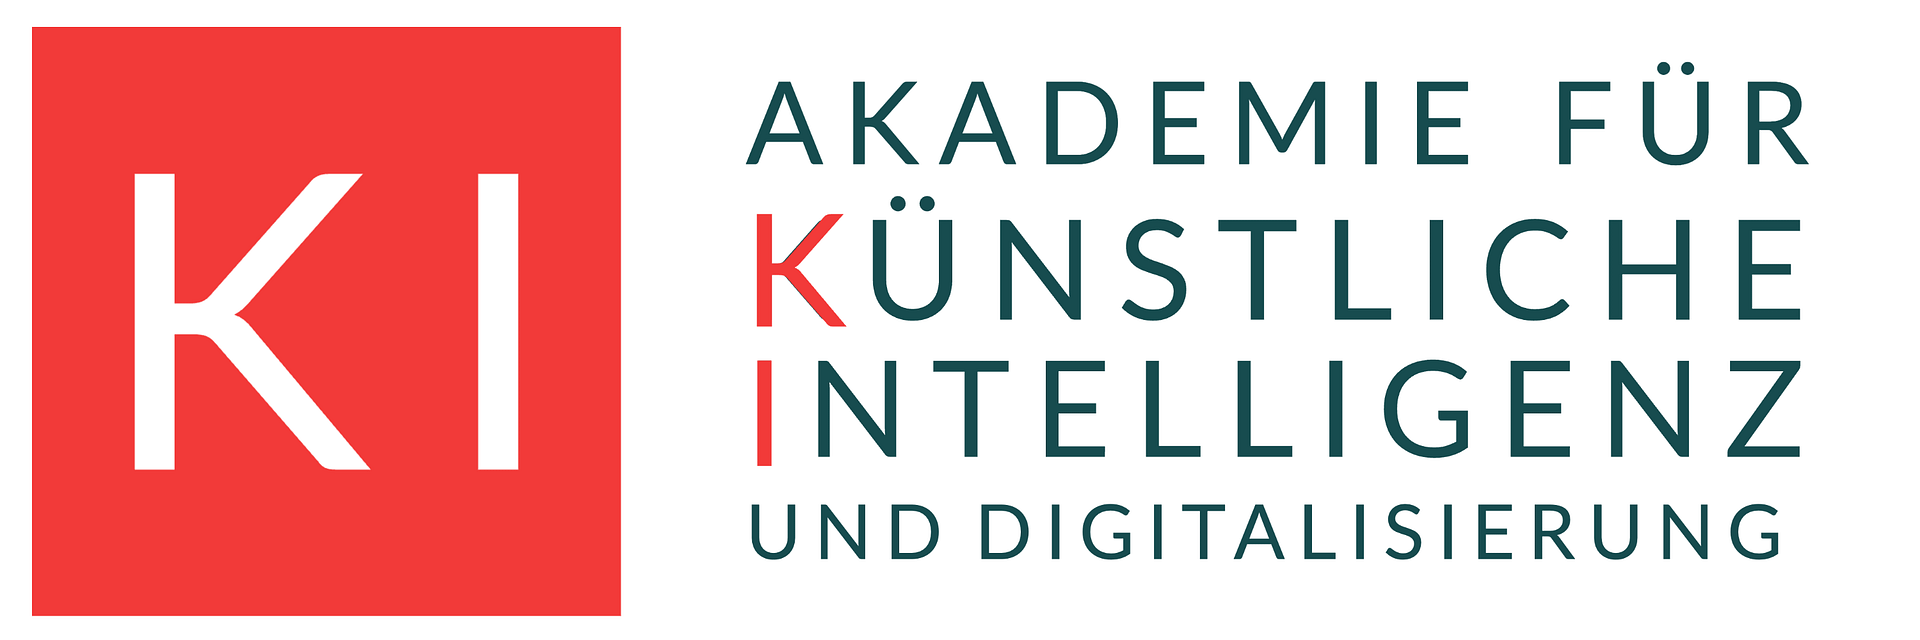 Akademie für Künstliche Intelligenz und Digitalisierung in Wien